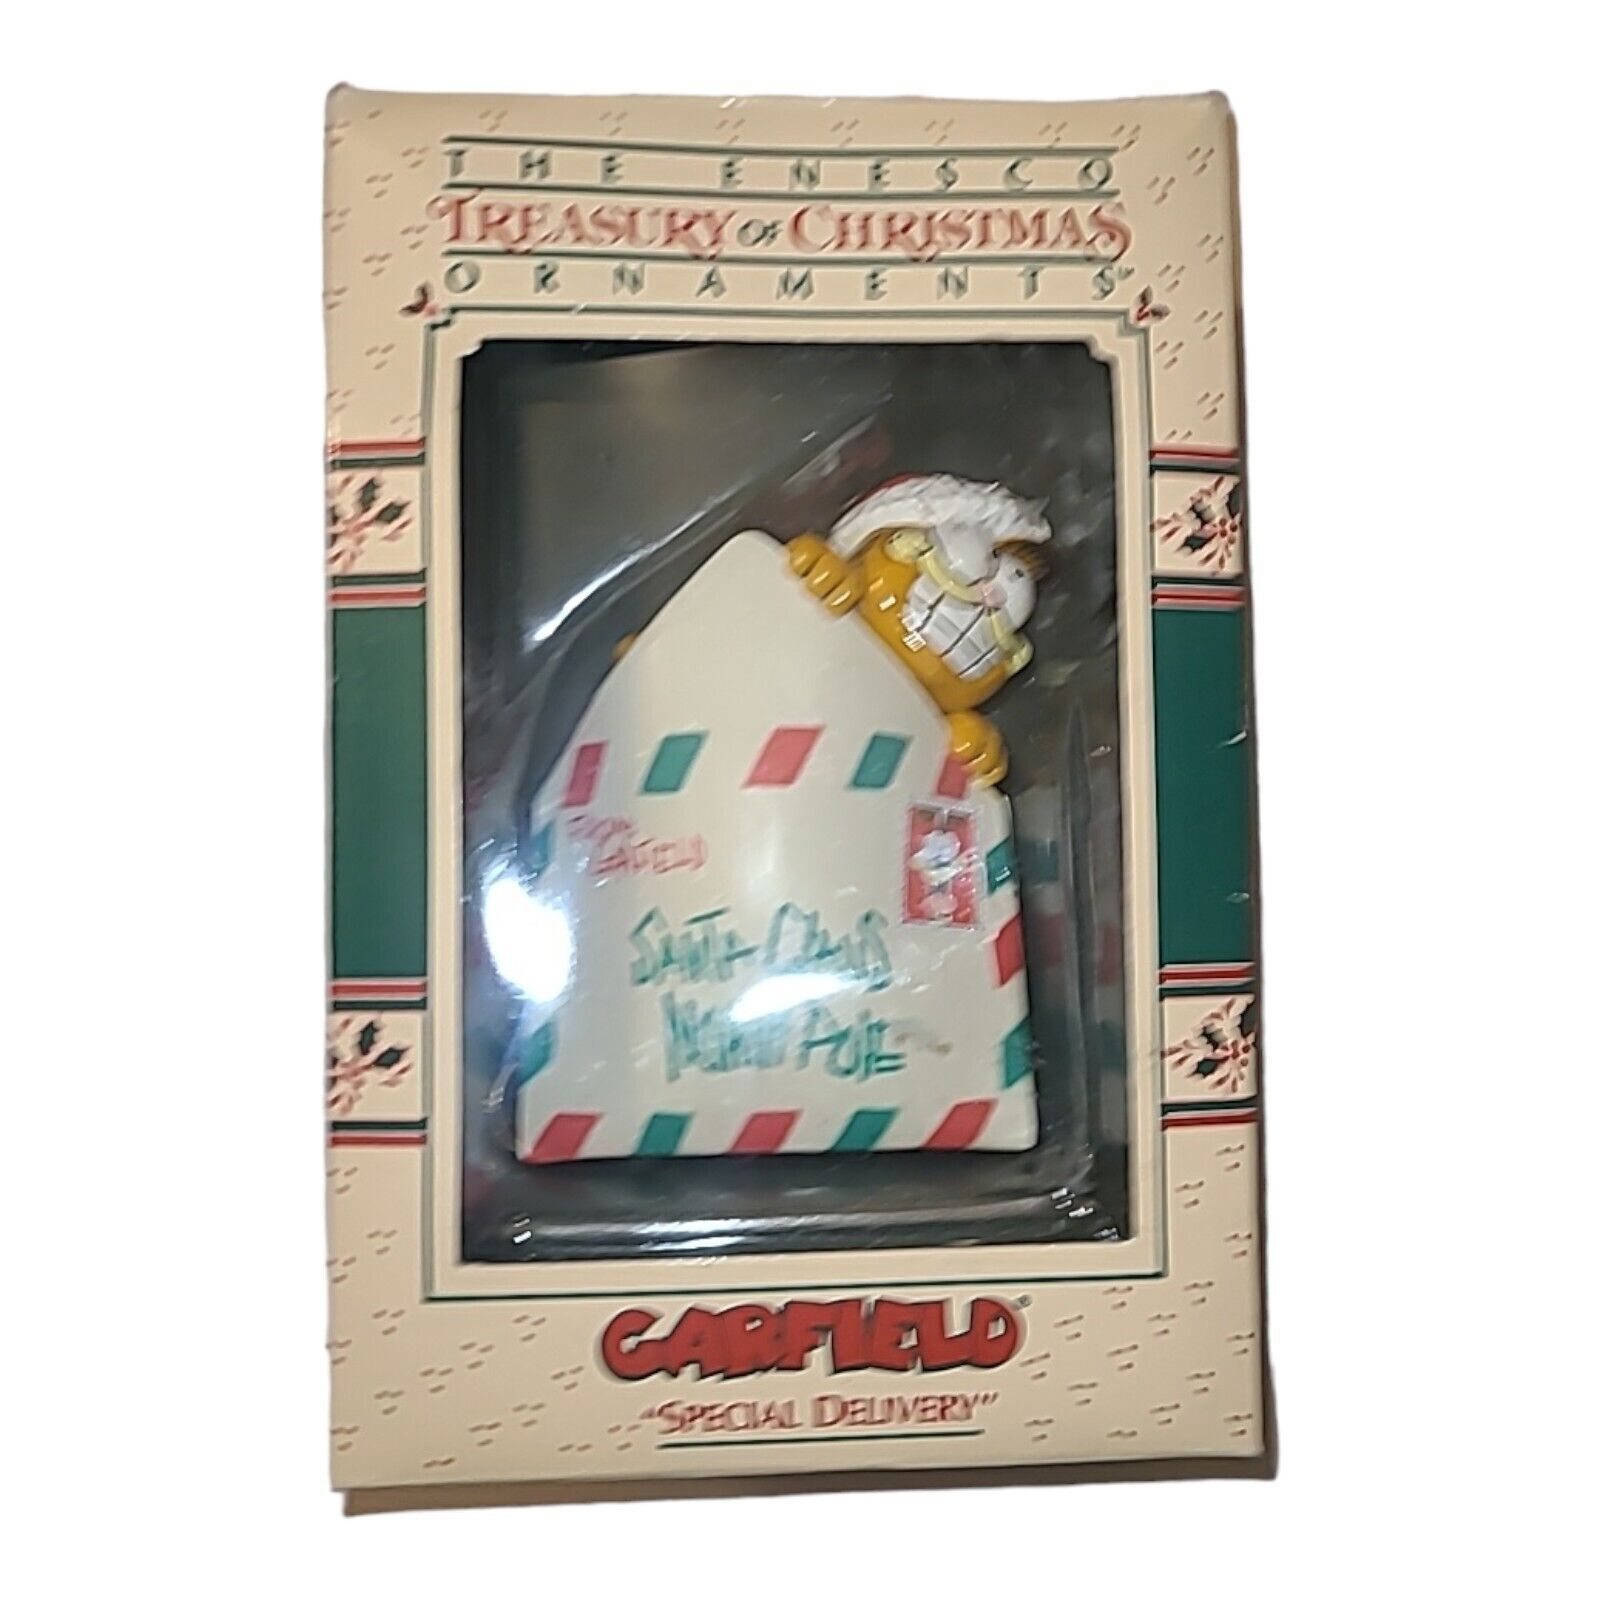 Vintage 1978 Enesco Christmas Ornaments: Garfield Special Delivery